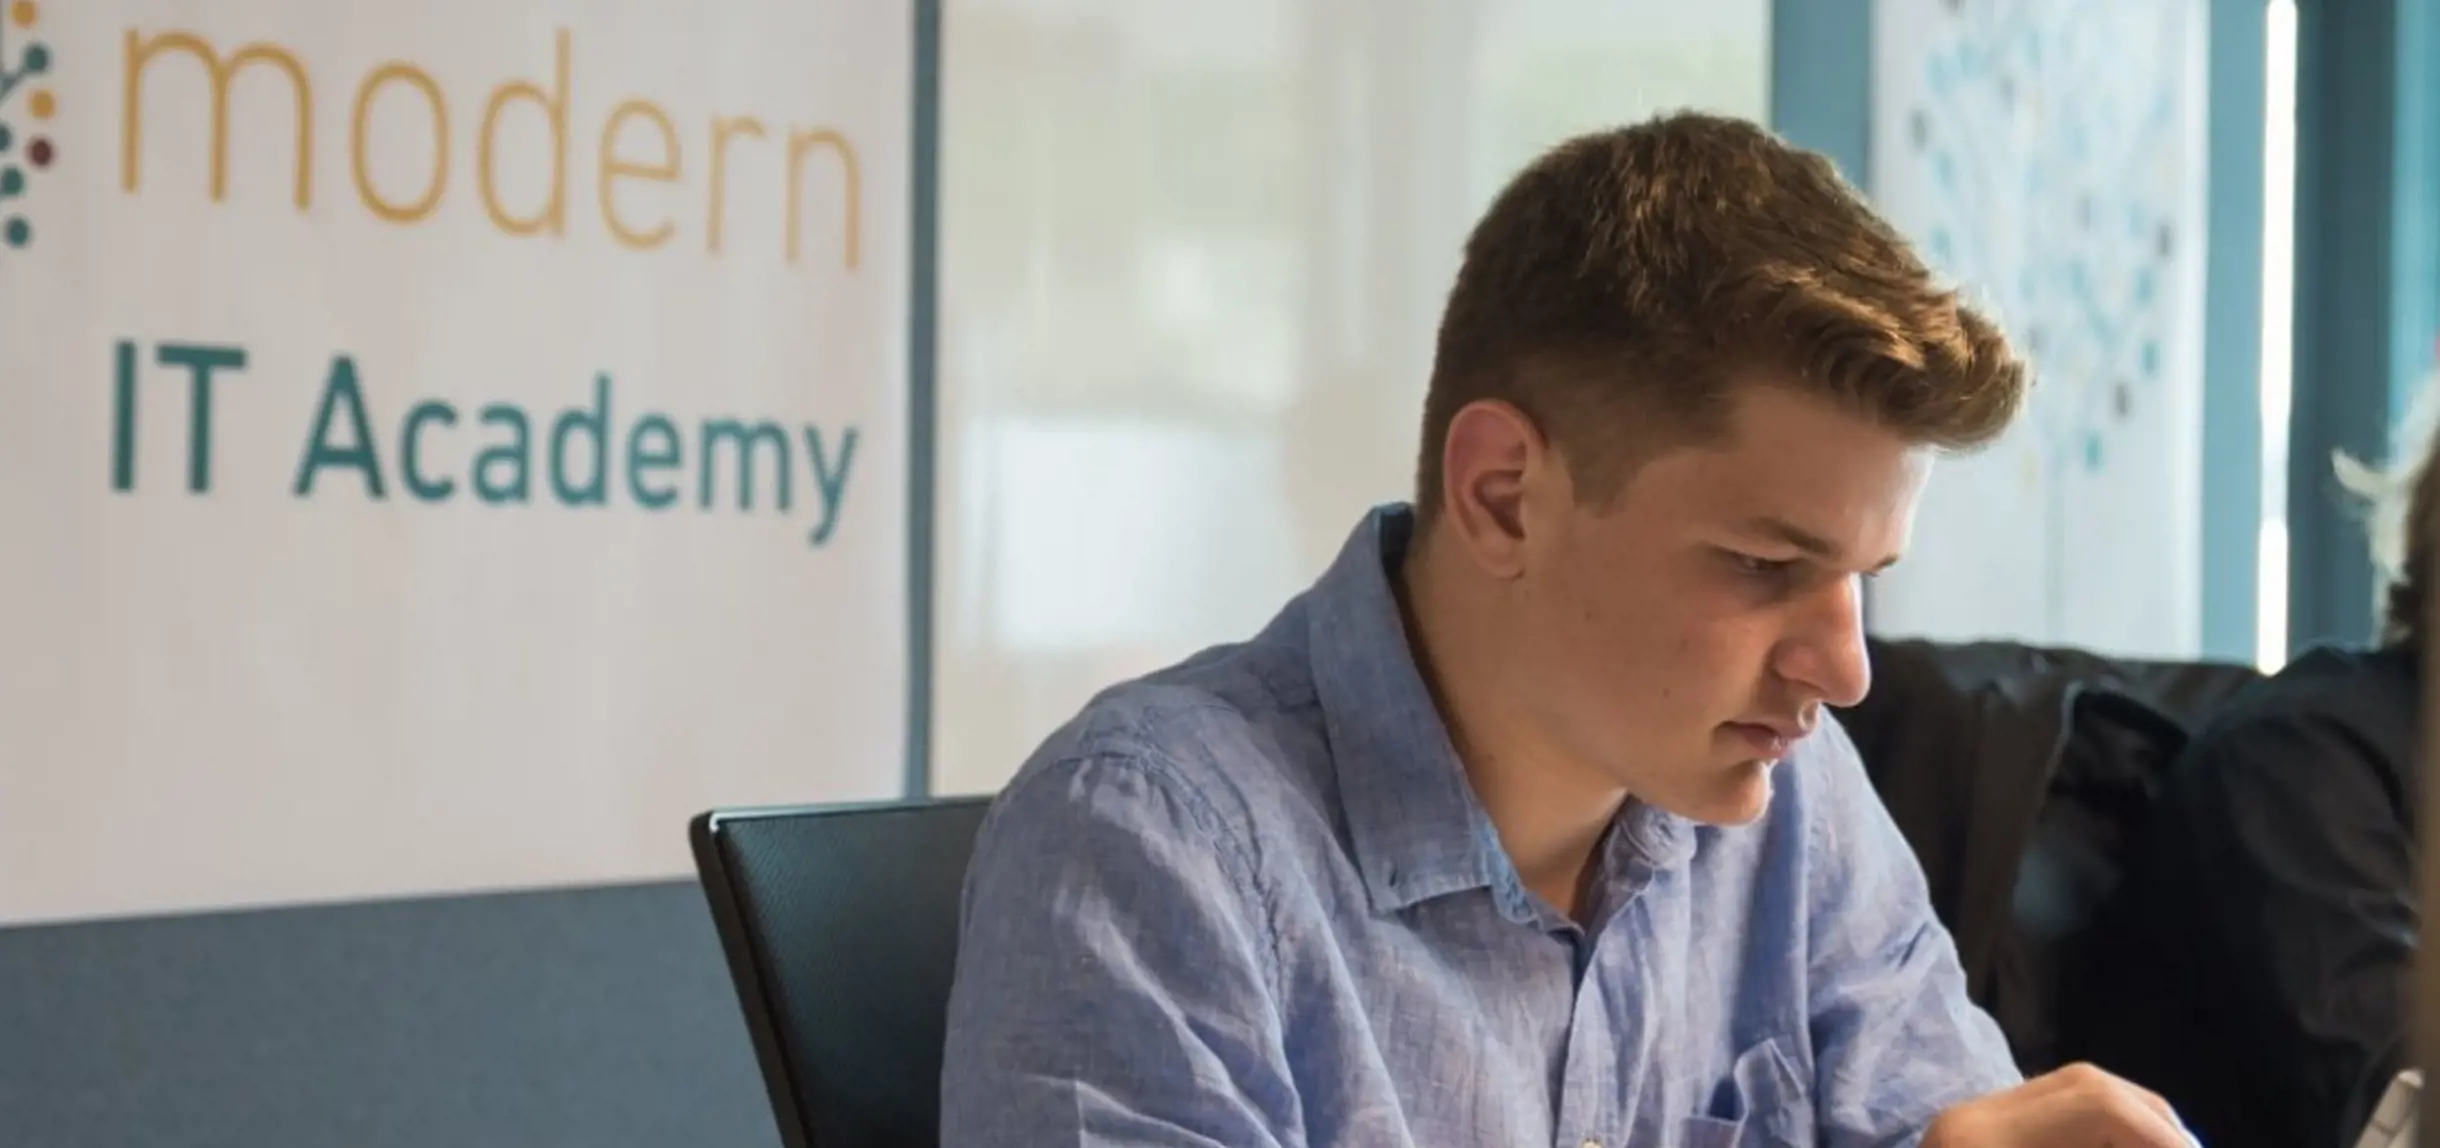 Junger Lehrling im blauen Hemd bei der isolutions Modern IT Academy